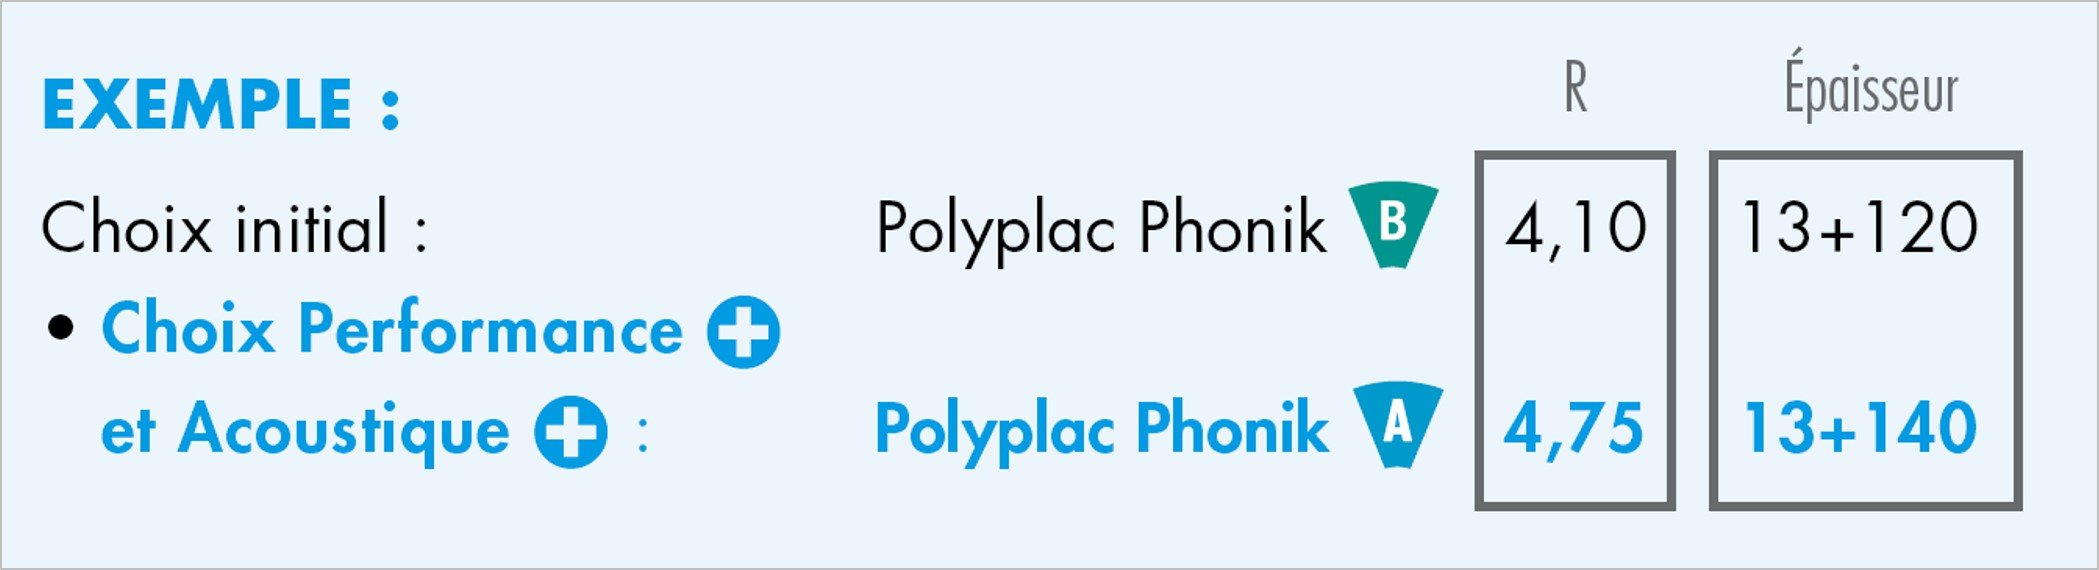 Knauf Polyplac phonik - CONSOMMATION D’ÉNERGIE